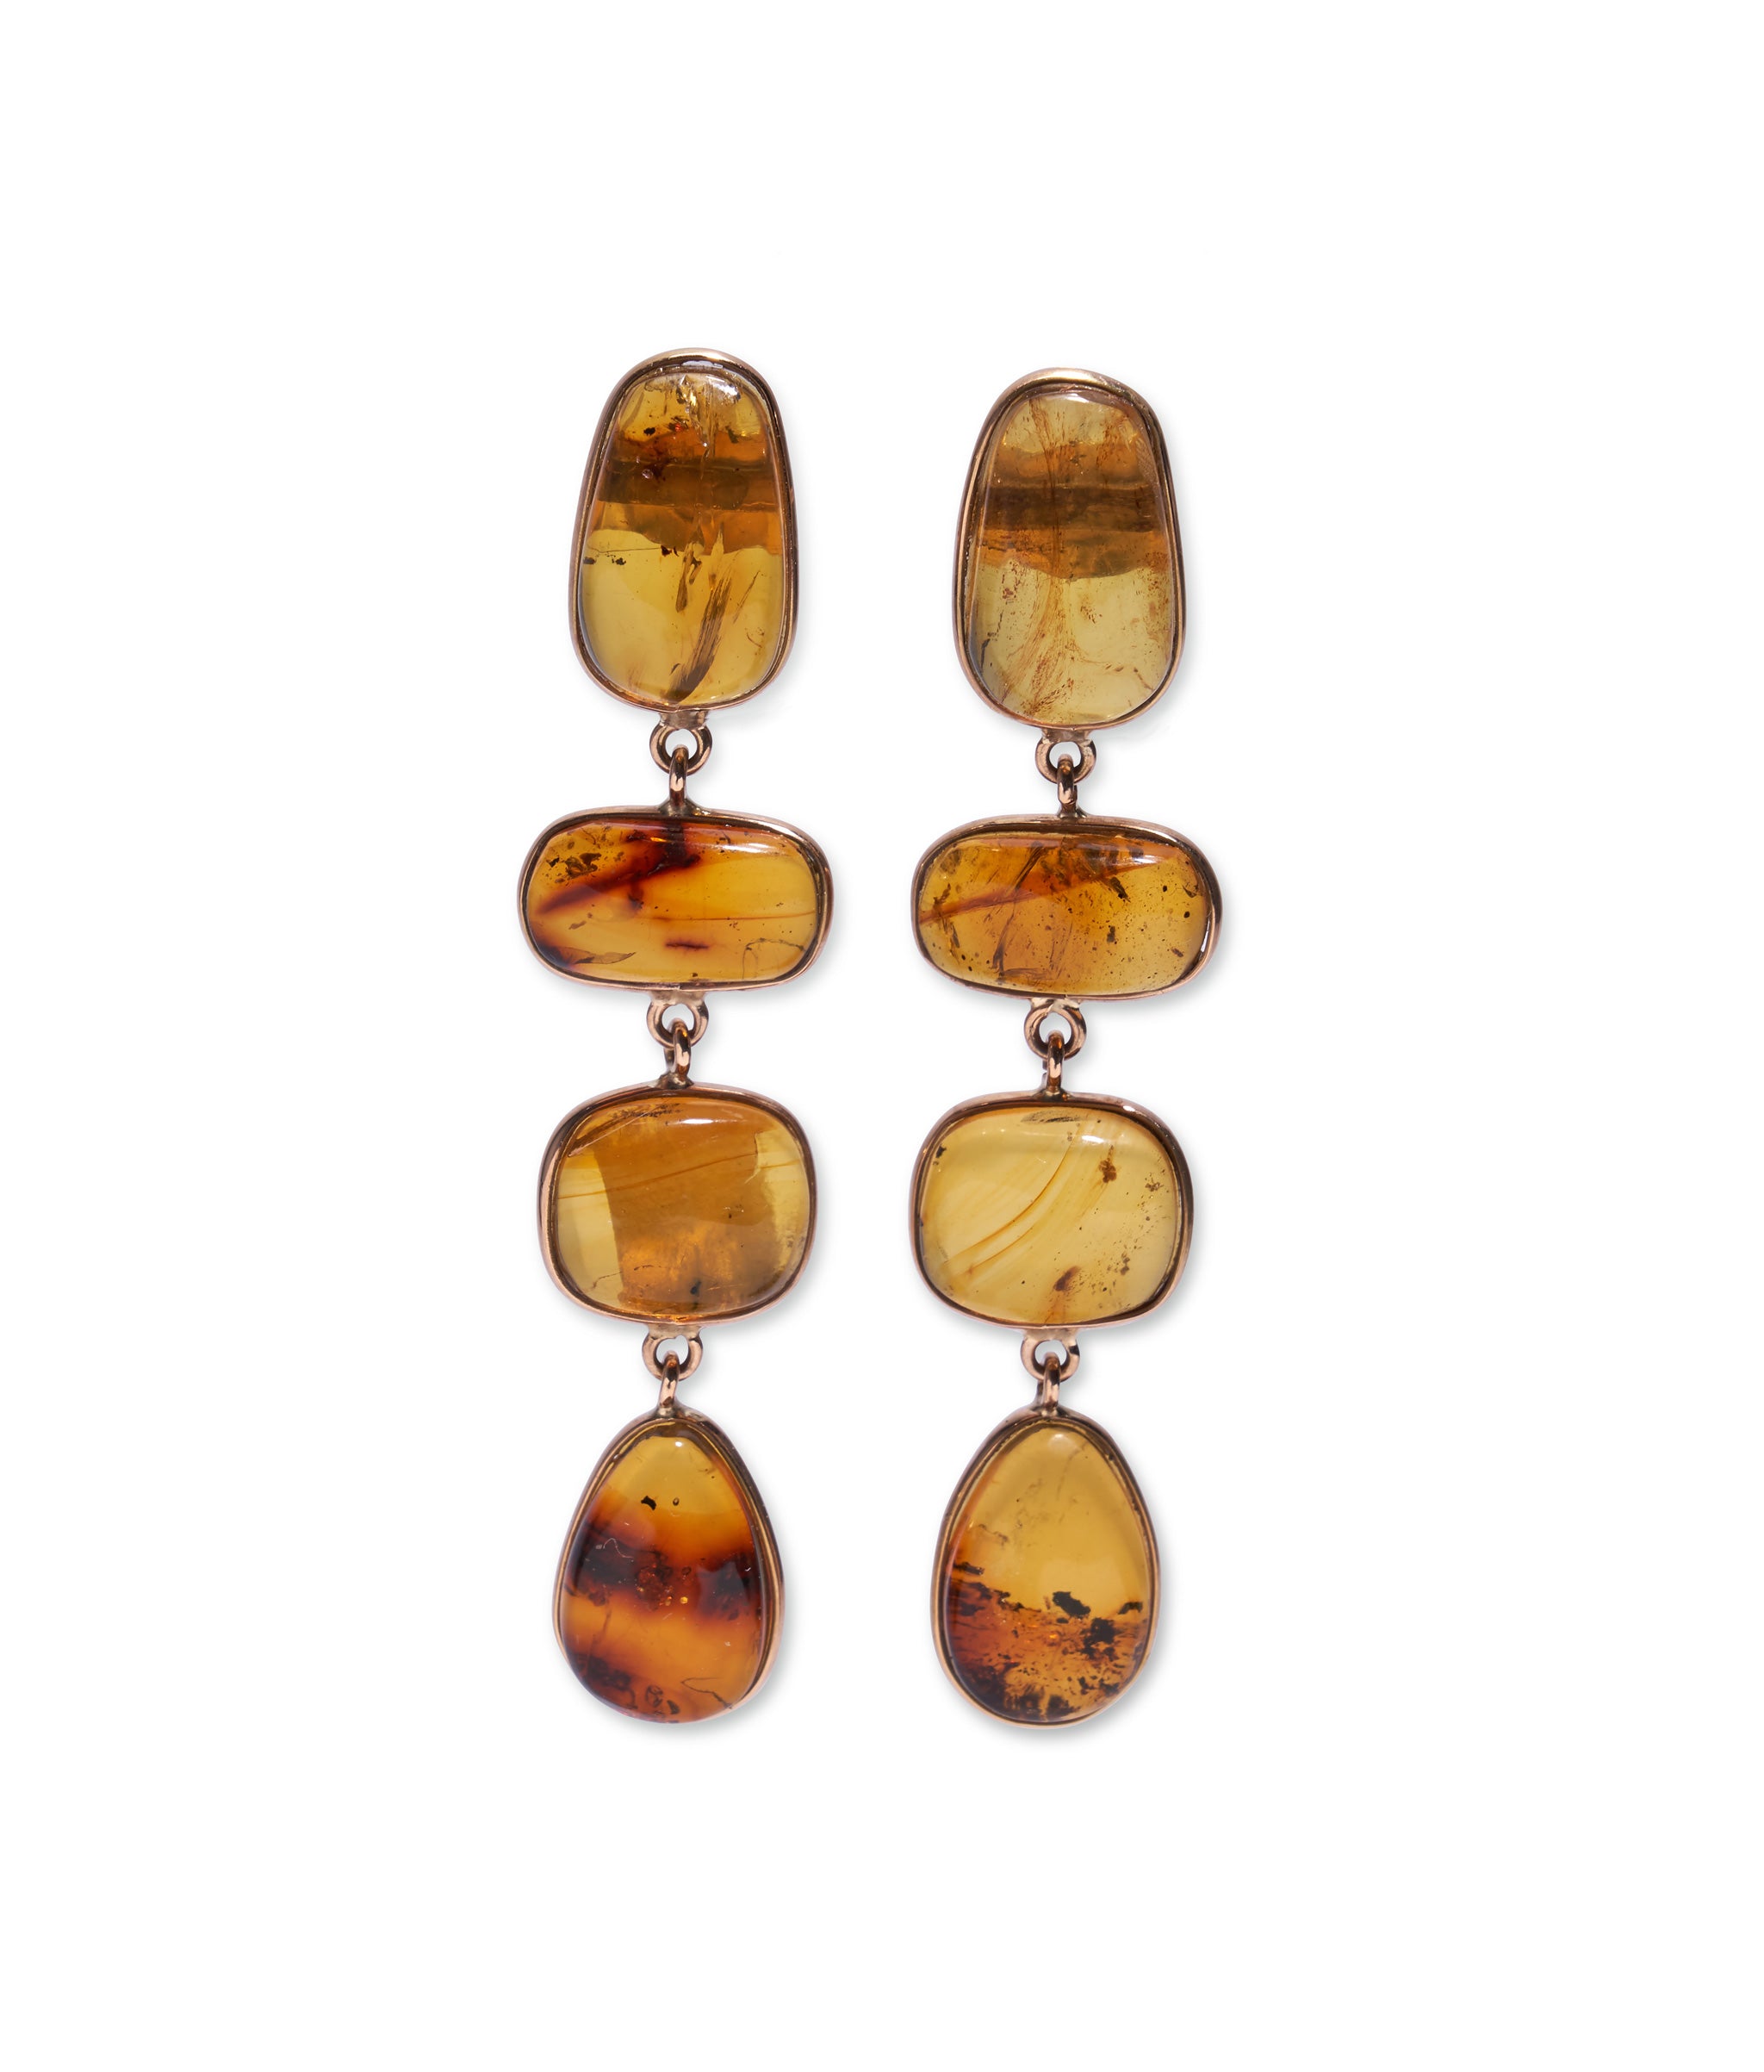 14k Gold Long Amber Column Earrings. Linked amber cabochon statement column earrings with 14k gold bezels.